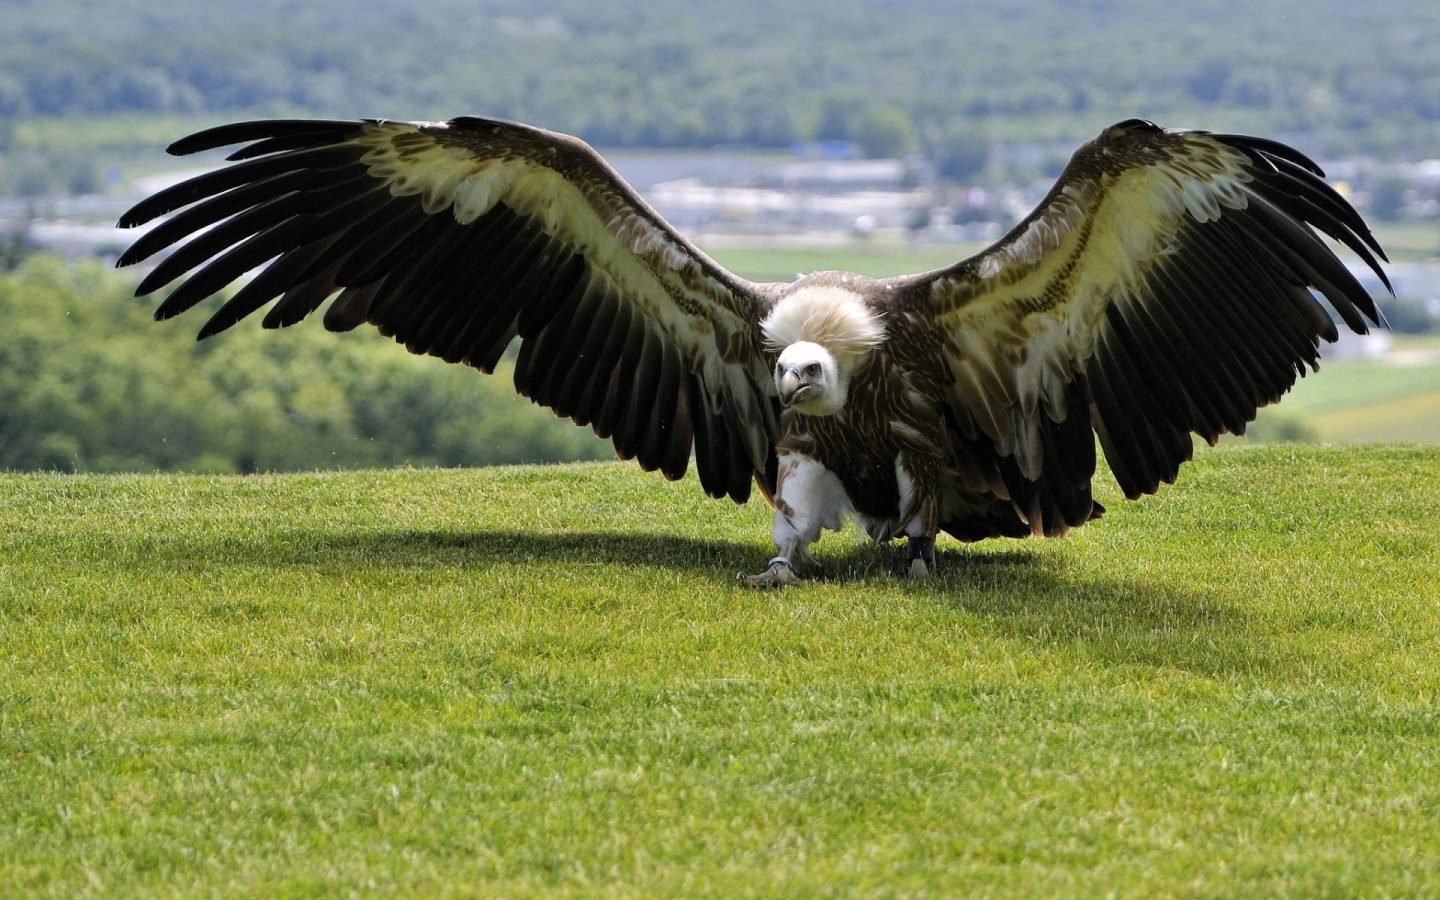 big vulture bird